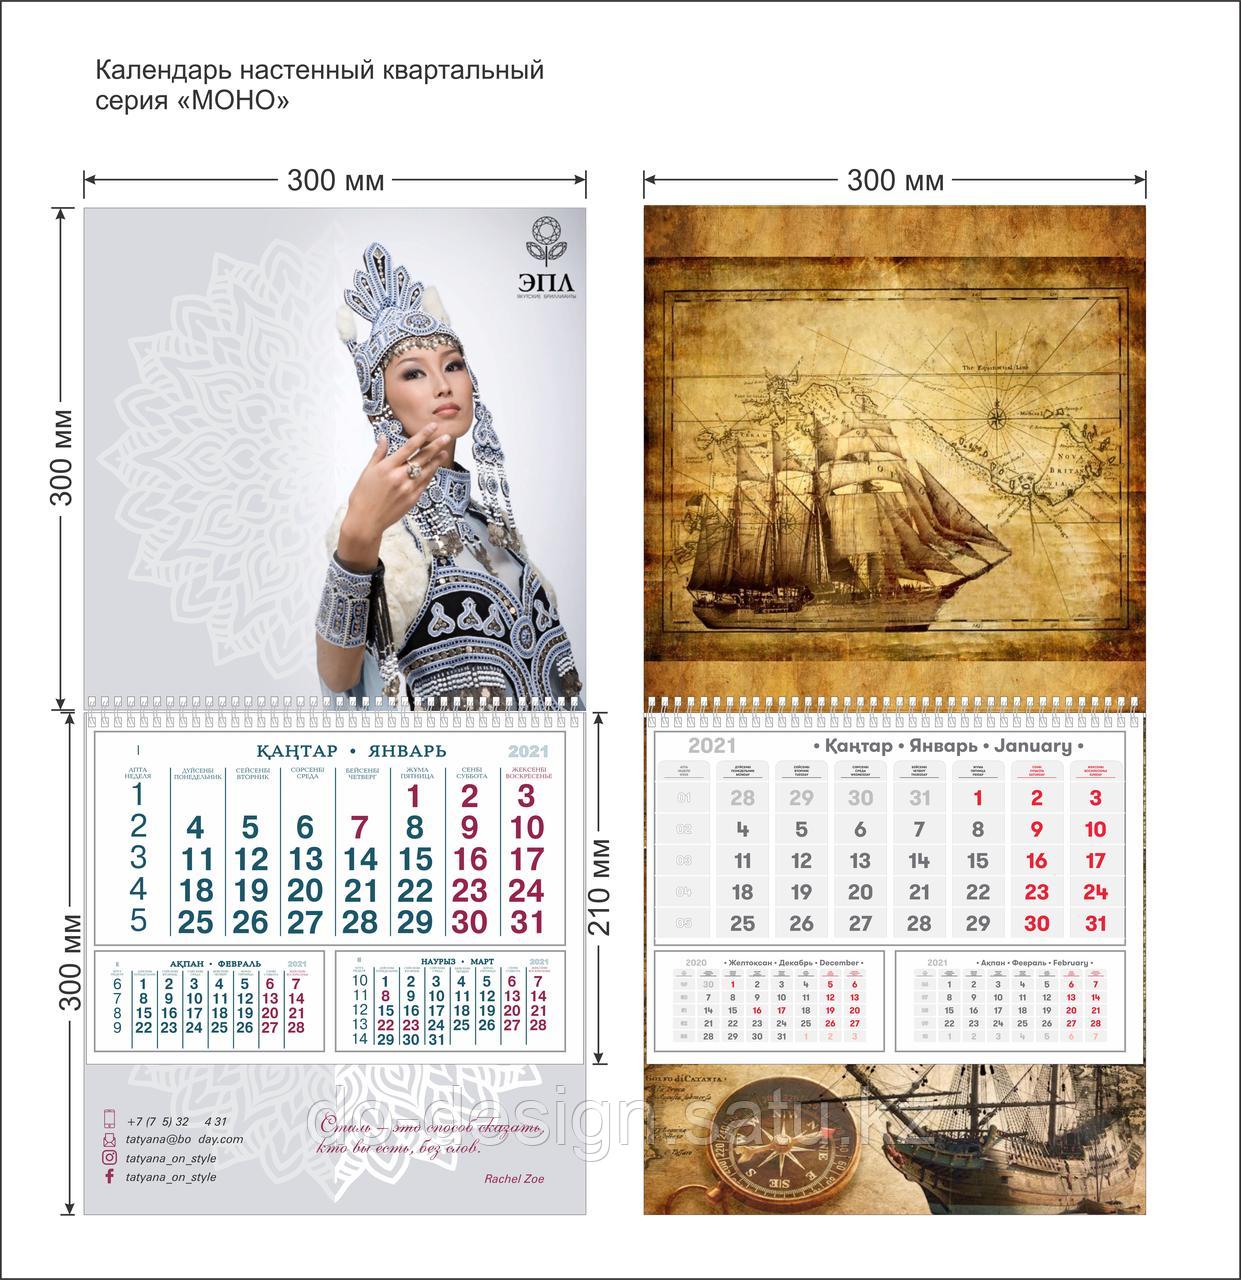 Календарь квартальный серия МОНО (id 83022169), купить в Казахстане, цена  на Satu.kz